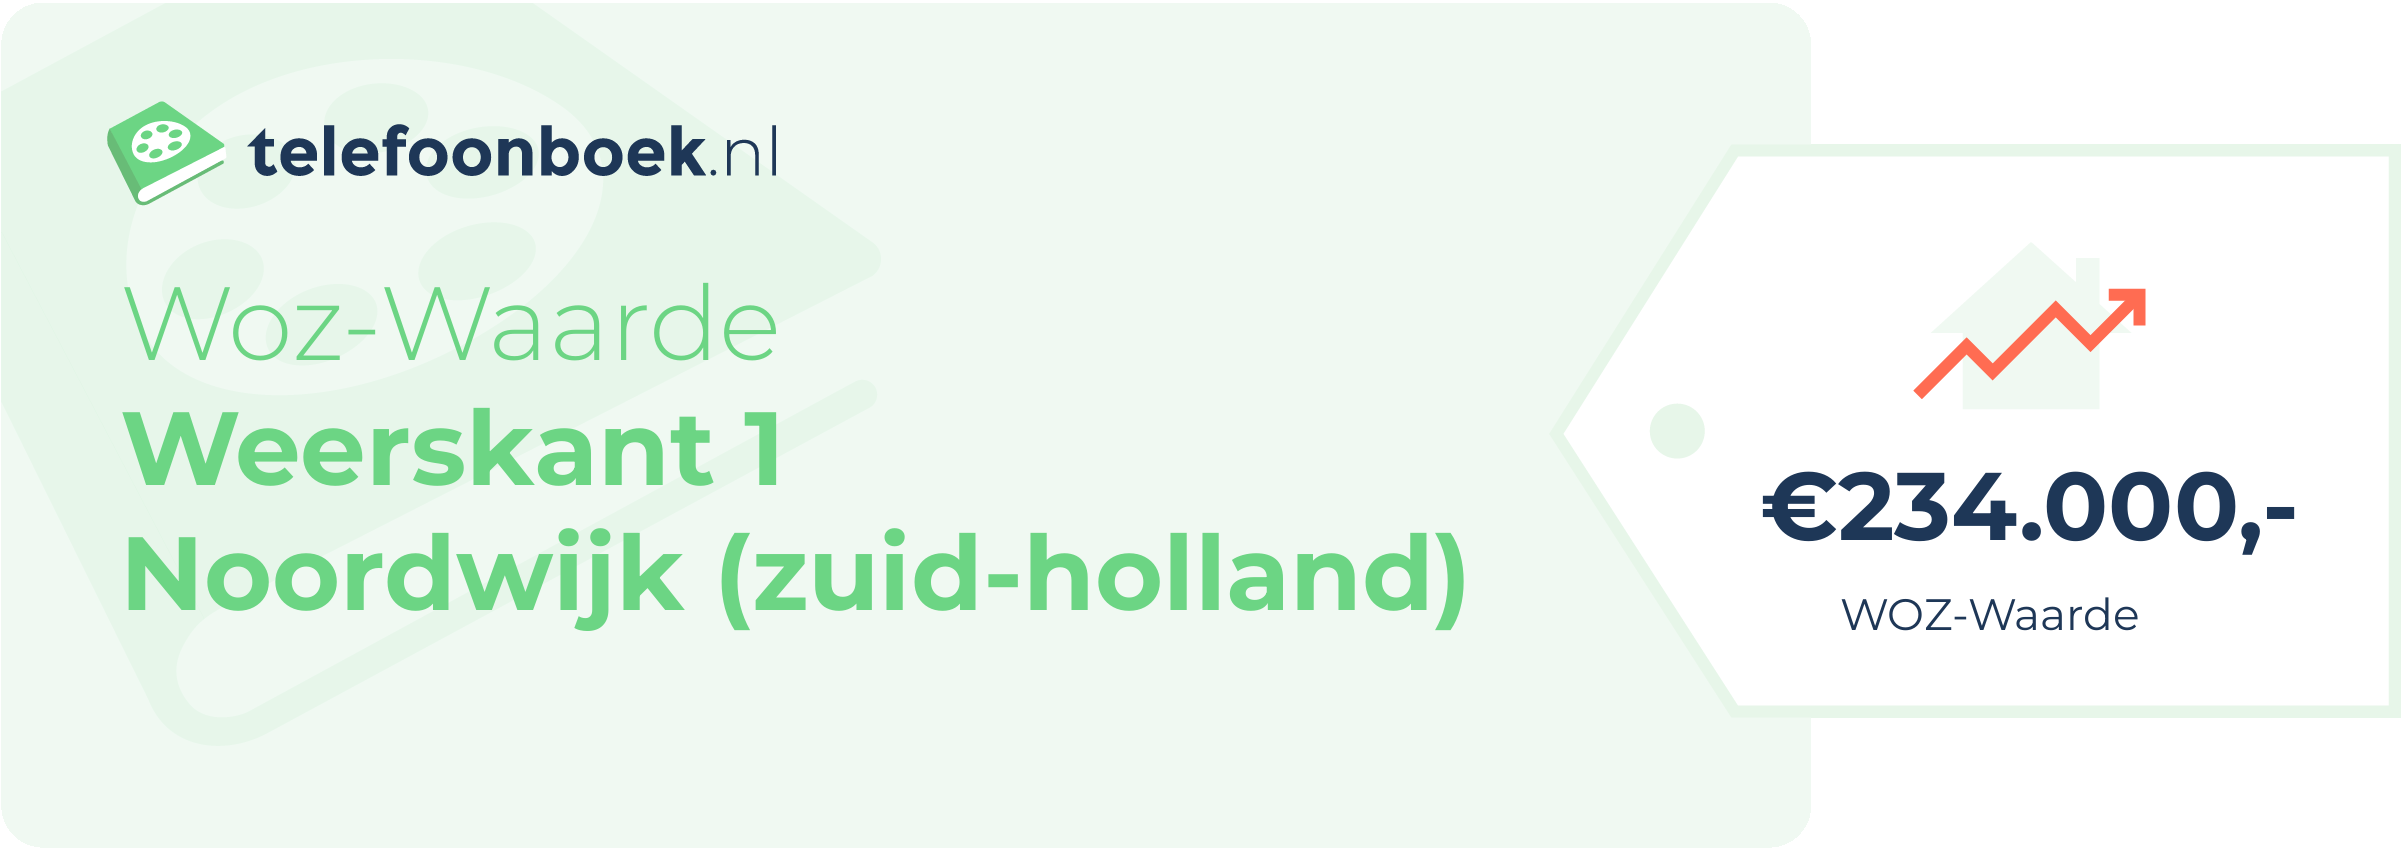 WOZ-waarde Weerskant 1 Noordwijk (Zuid-Holland)